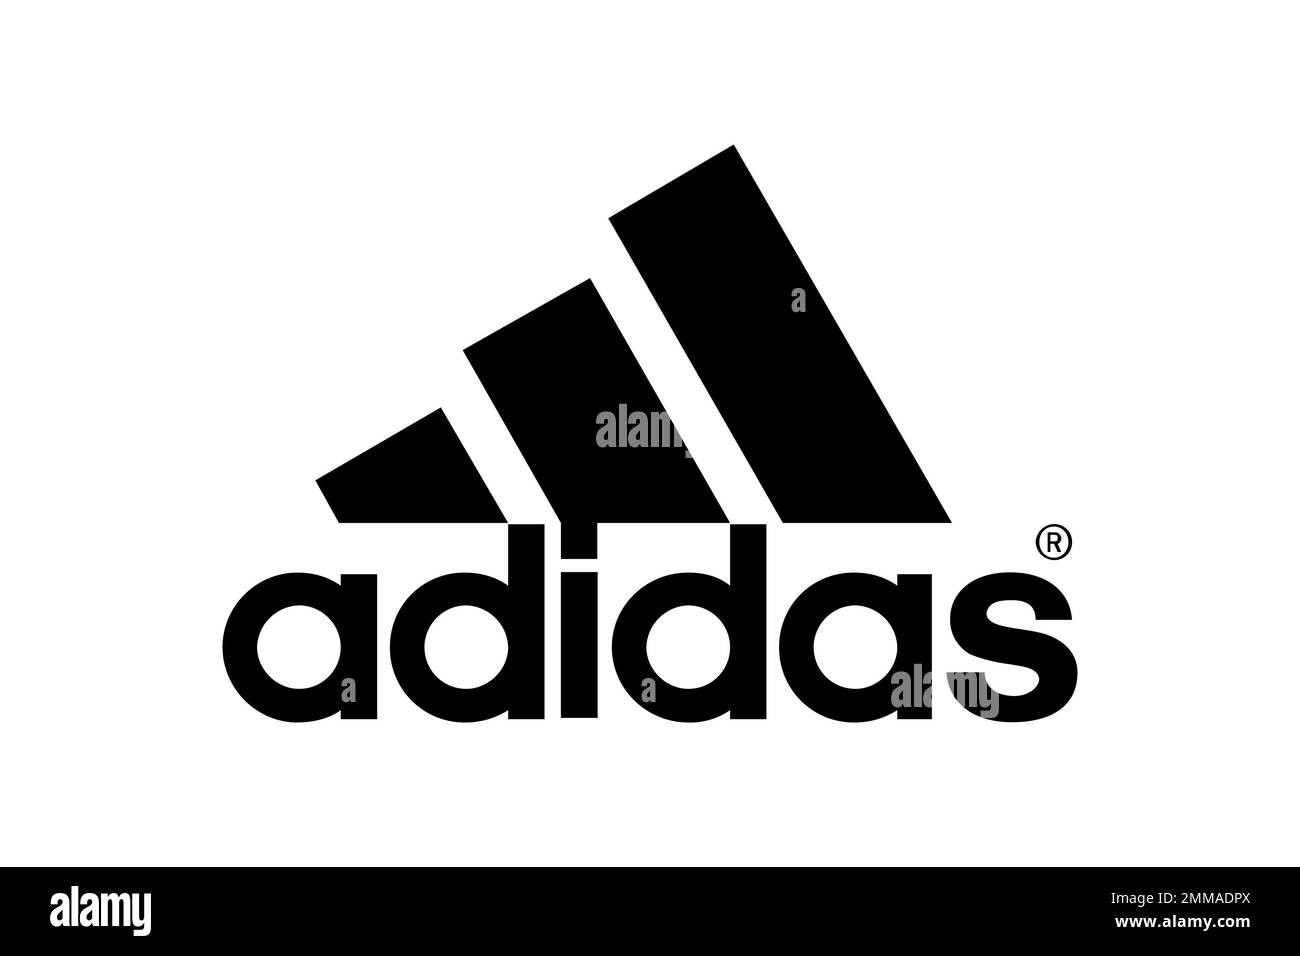 Adidas, white background, logo, brand name Stock Photo